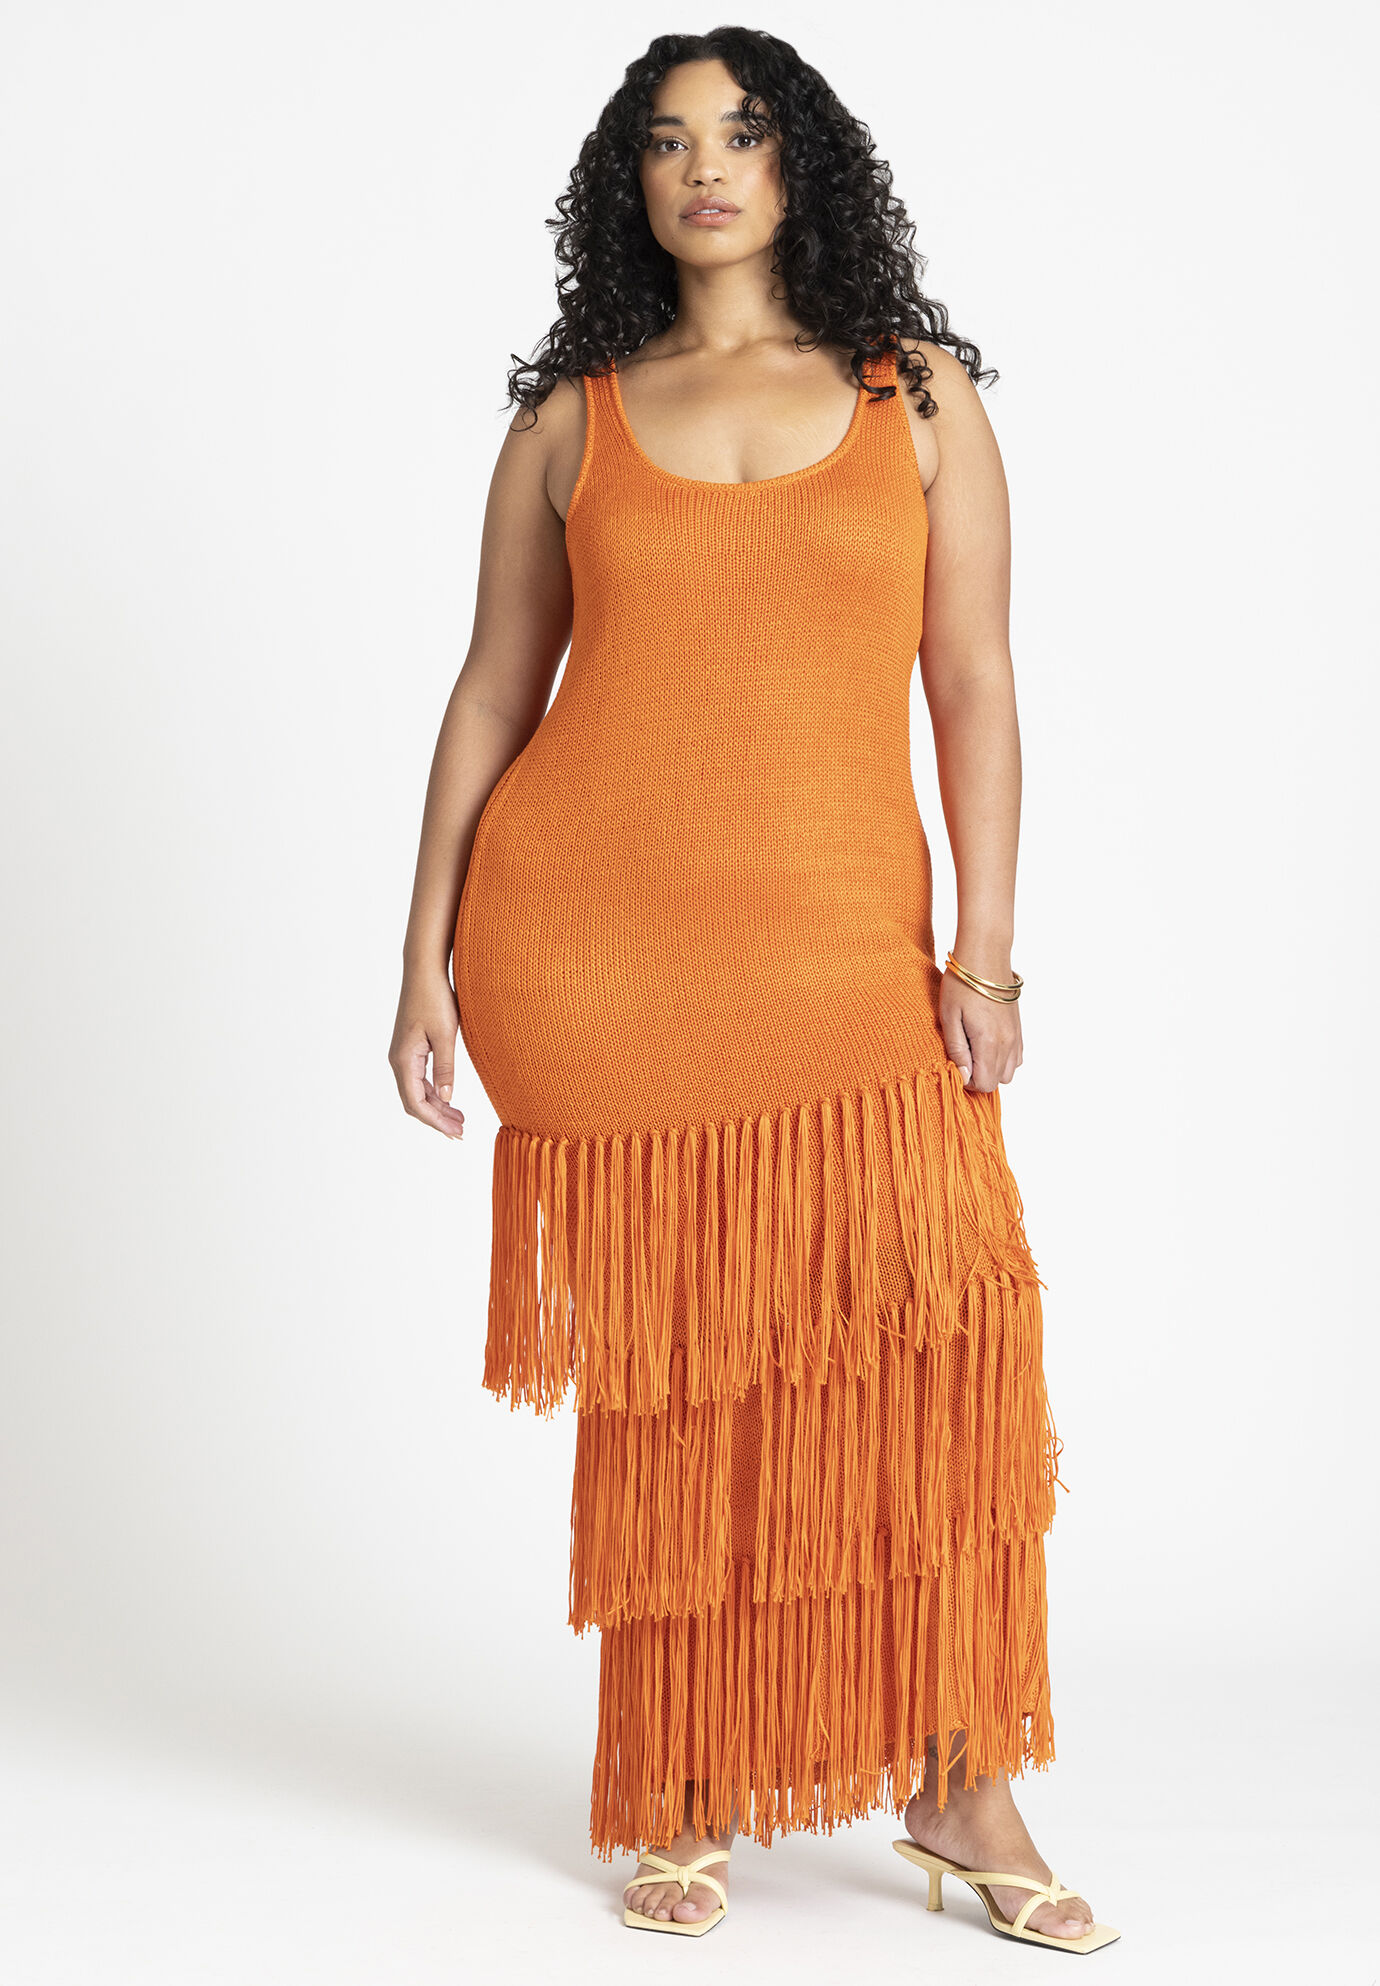 Eloquii orange tiered fringe beach dress.